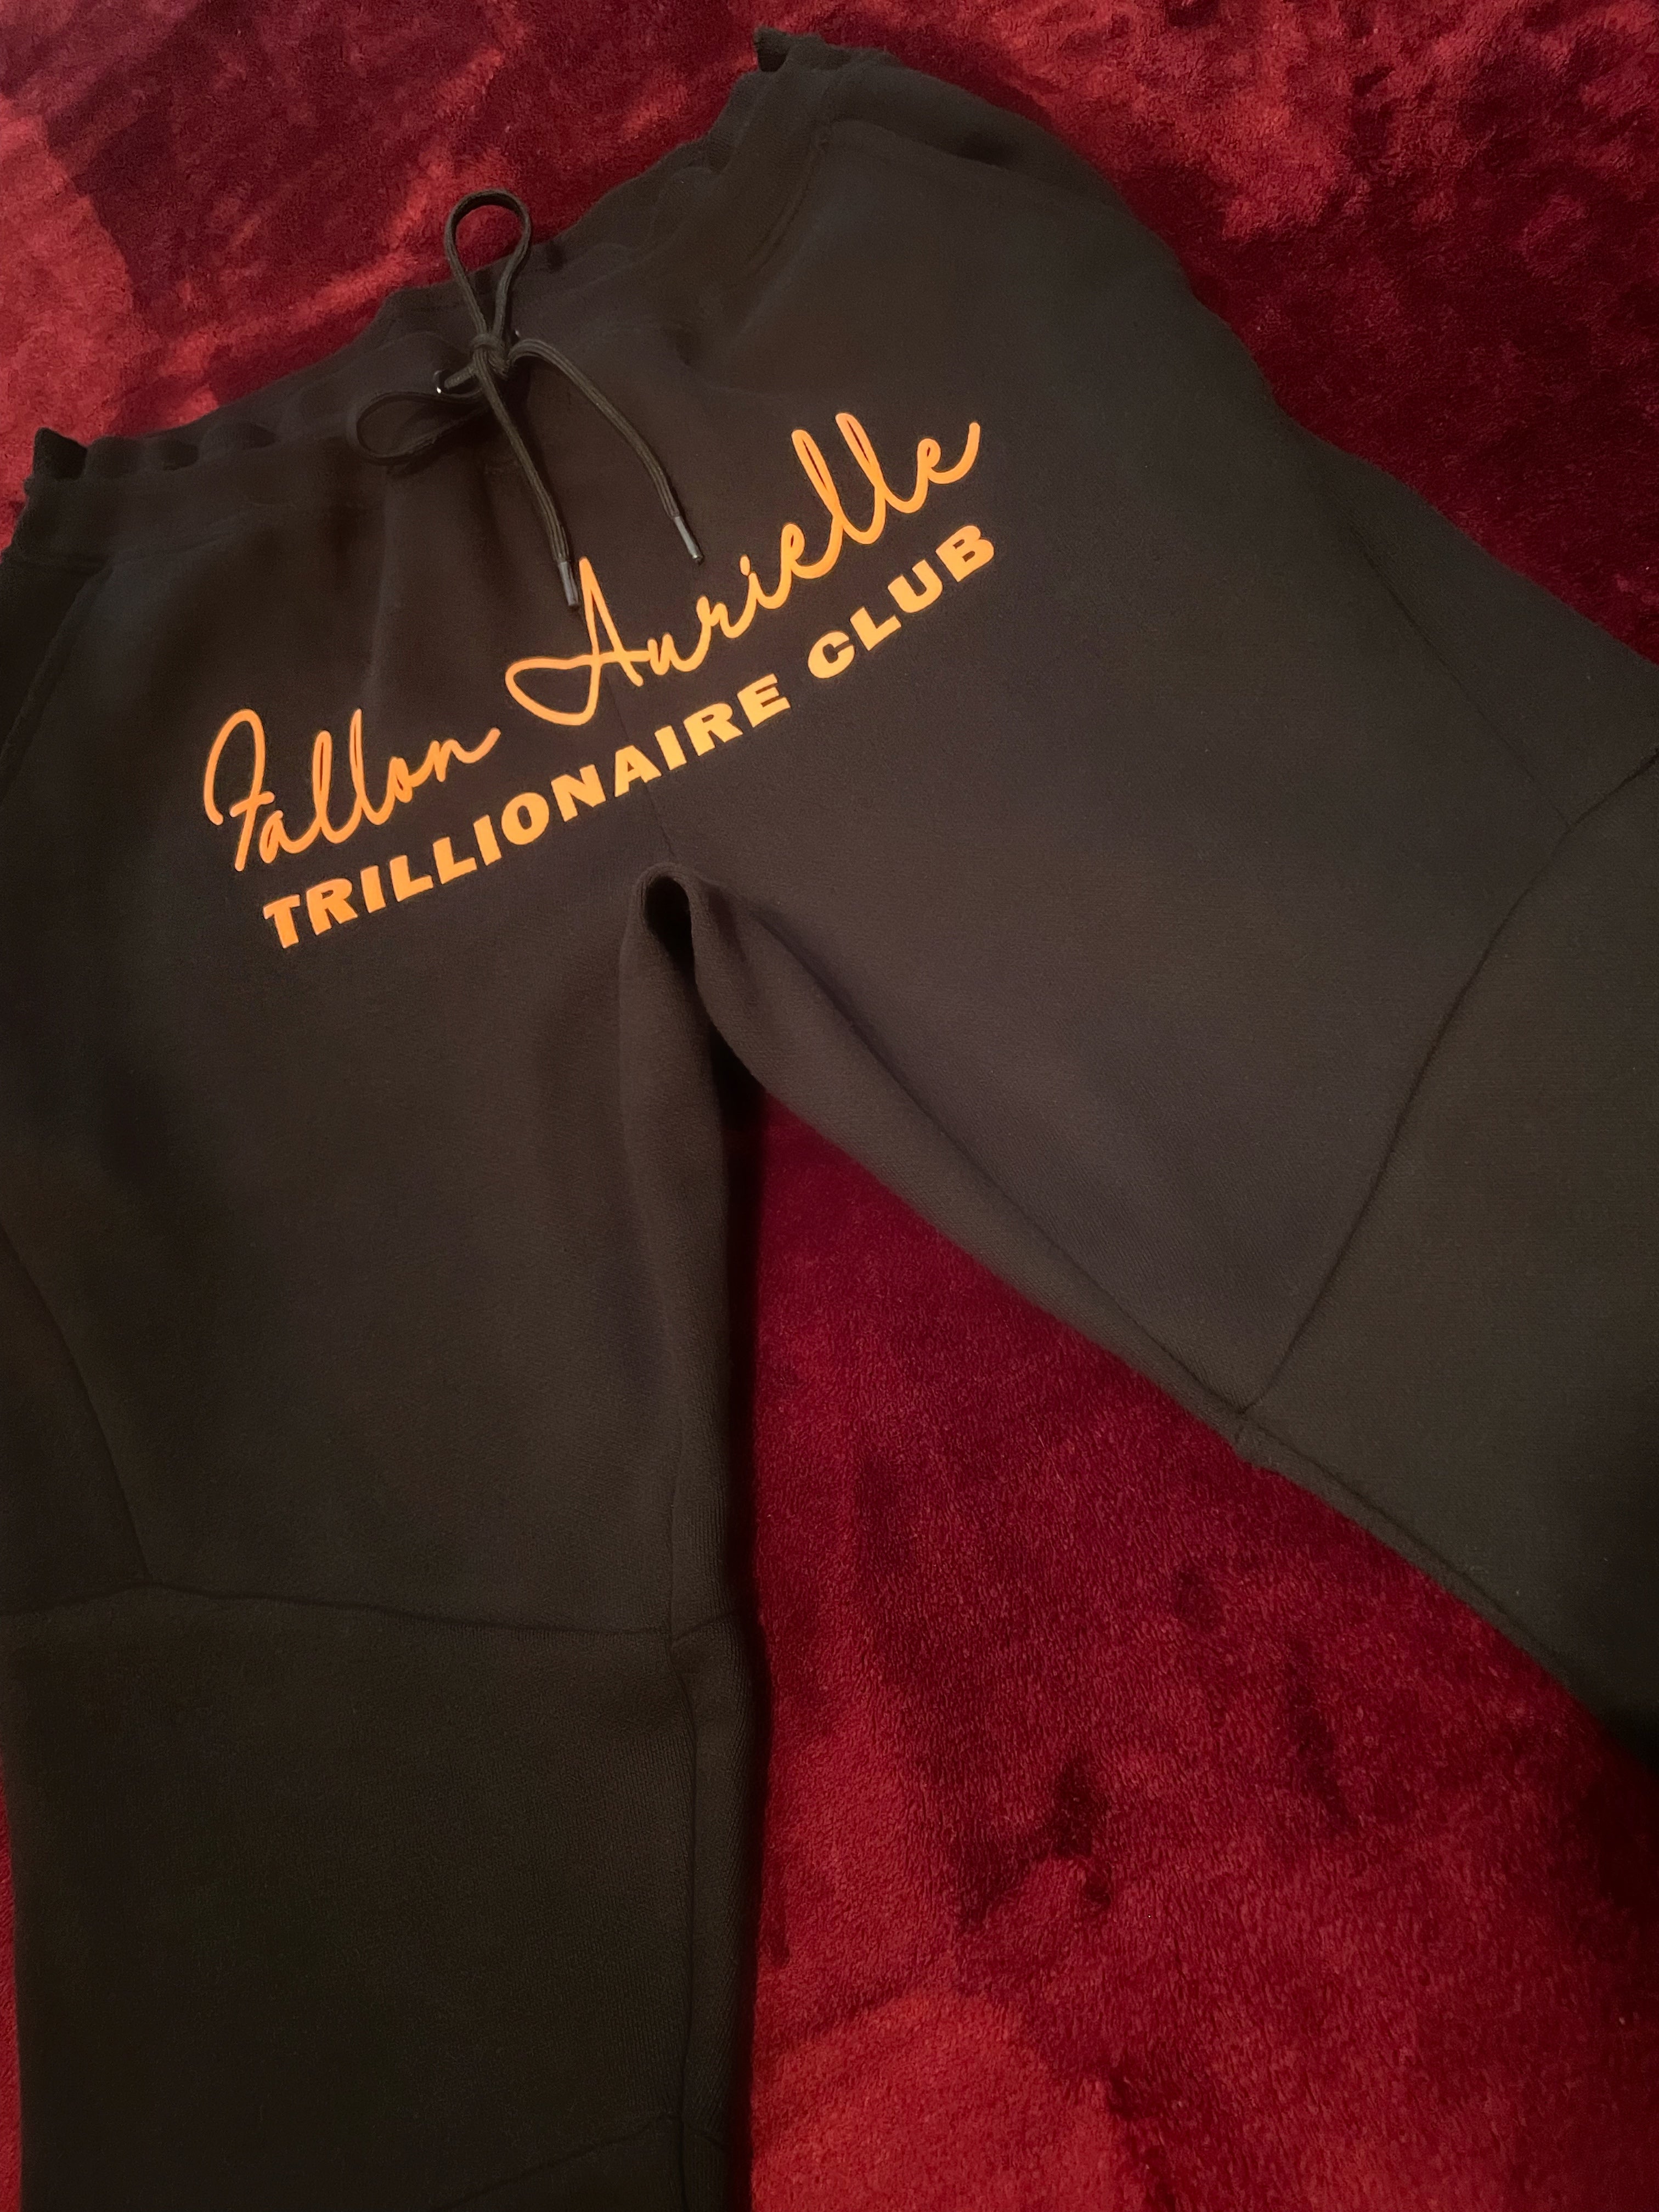 Fallon Aurielle Unisex Signature Trillionaire Club T-Shirt (Orange & Black)